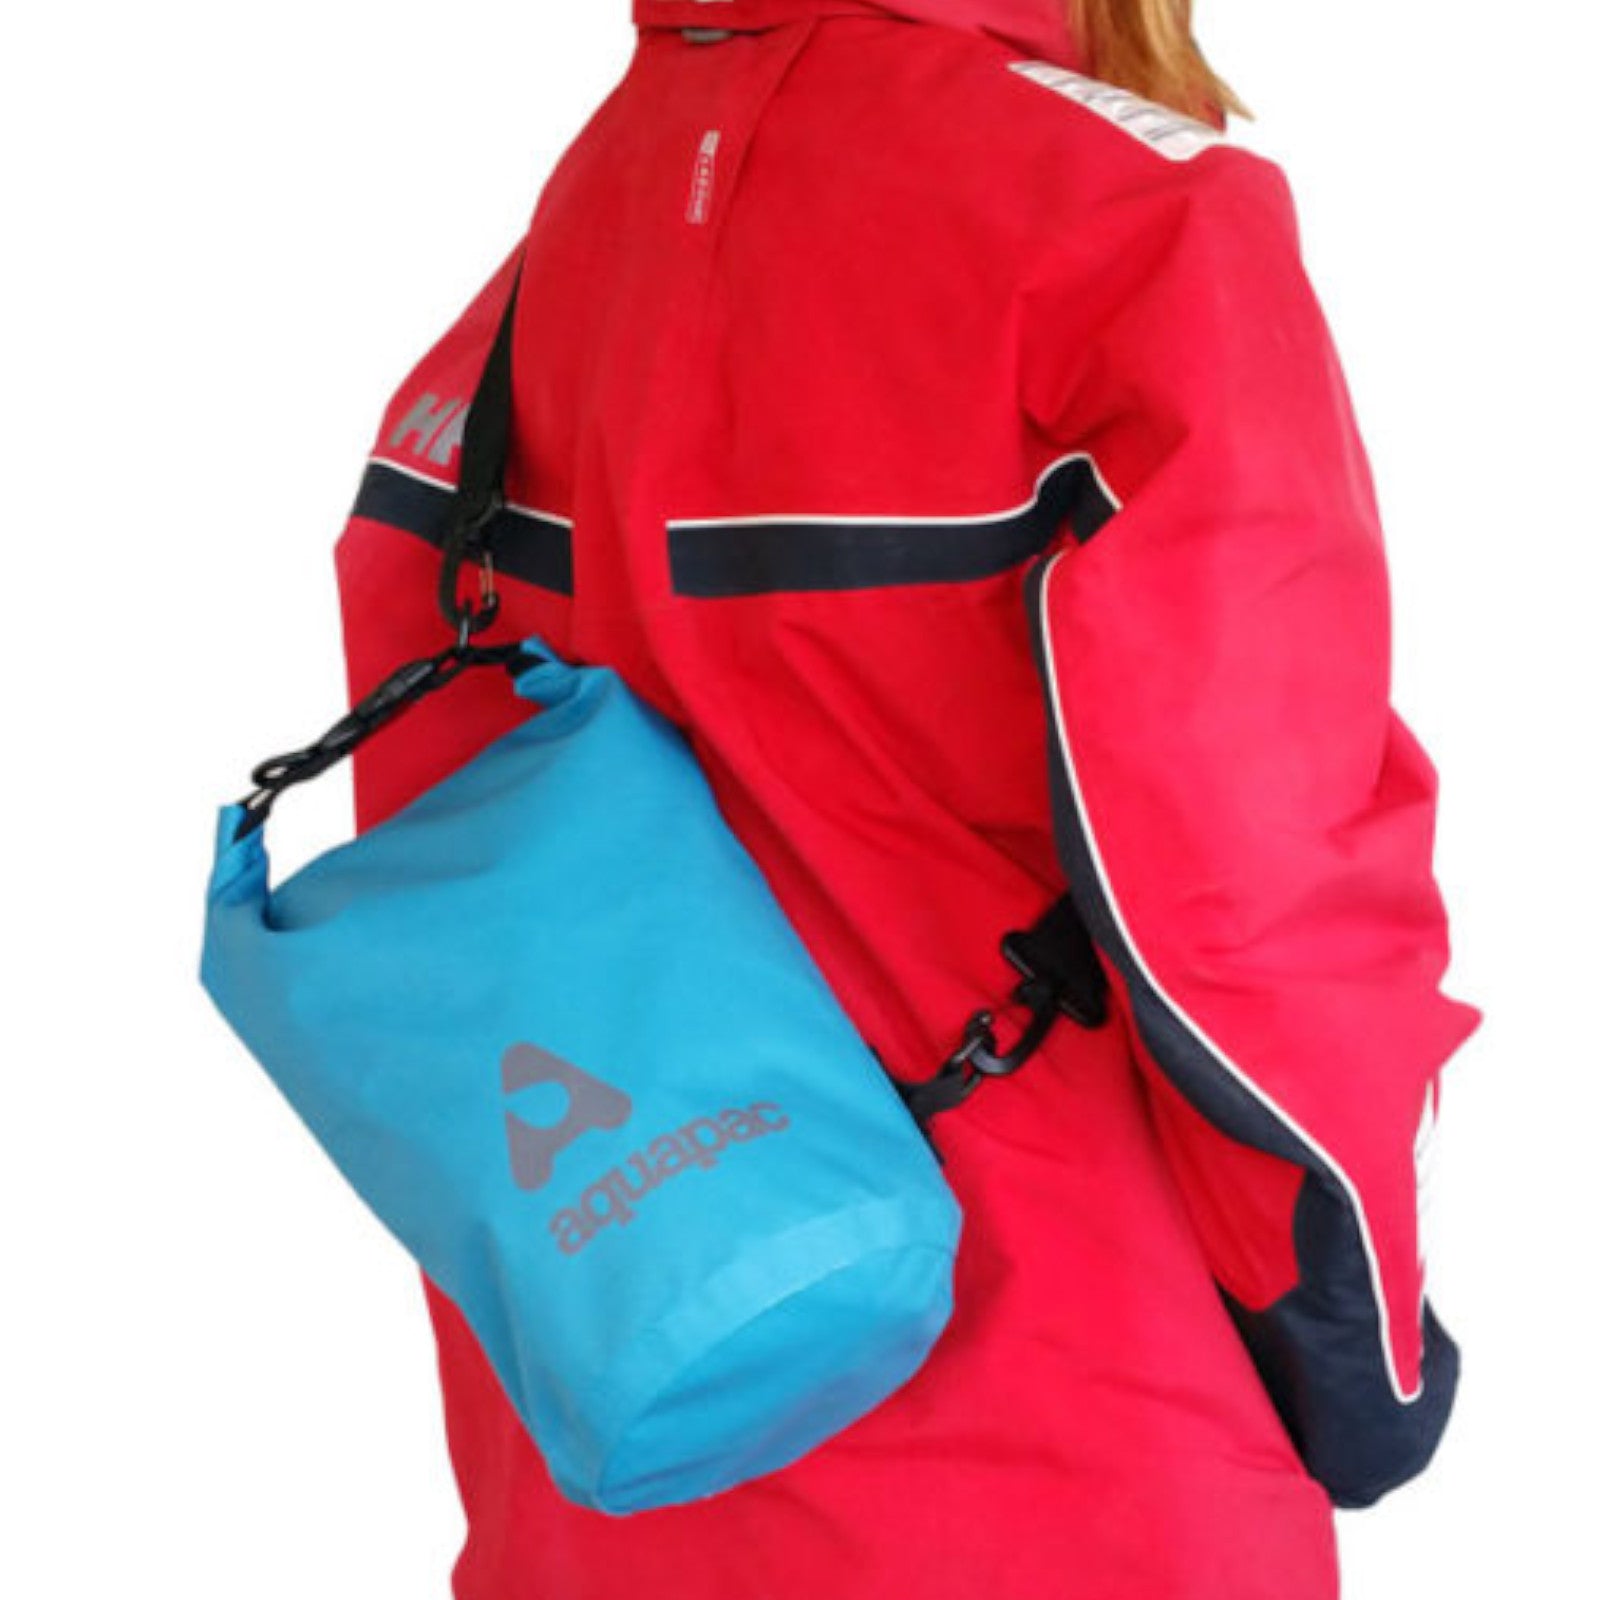 Aquapac Trailproof 7L Cool Blue Waterproof Dry Bag